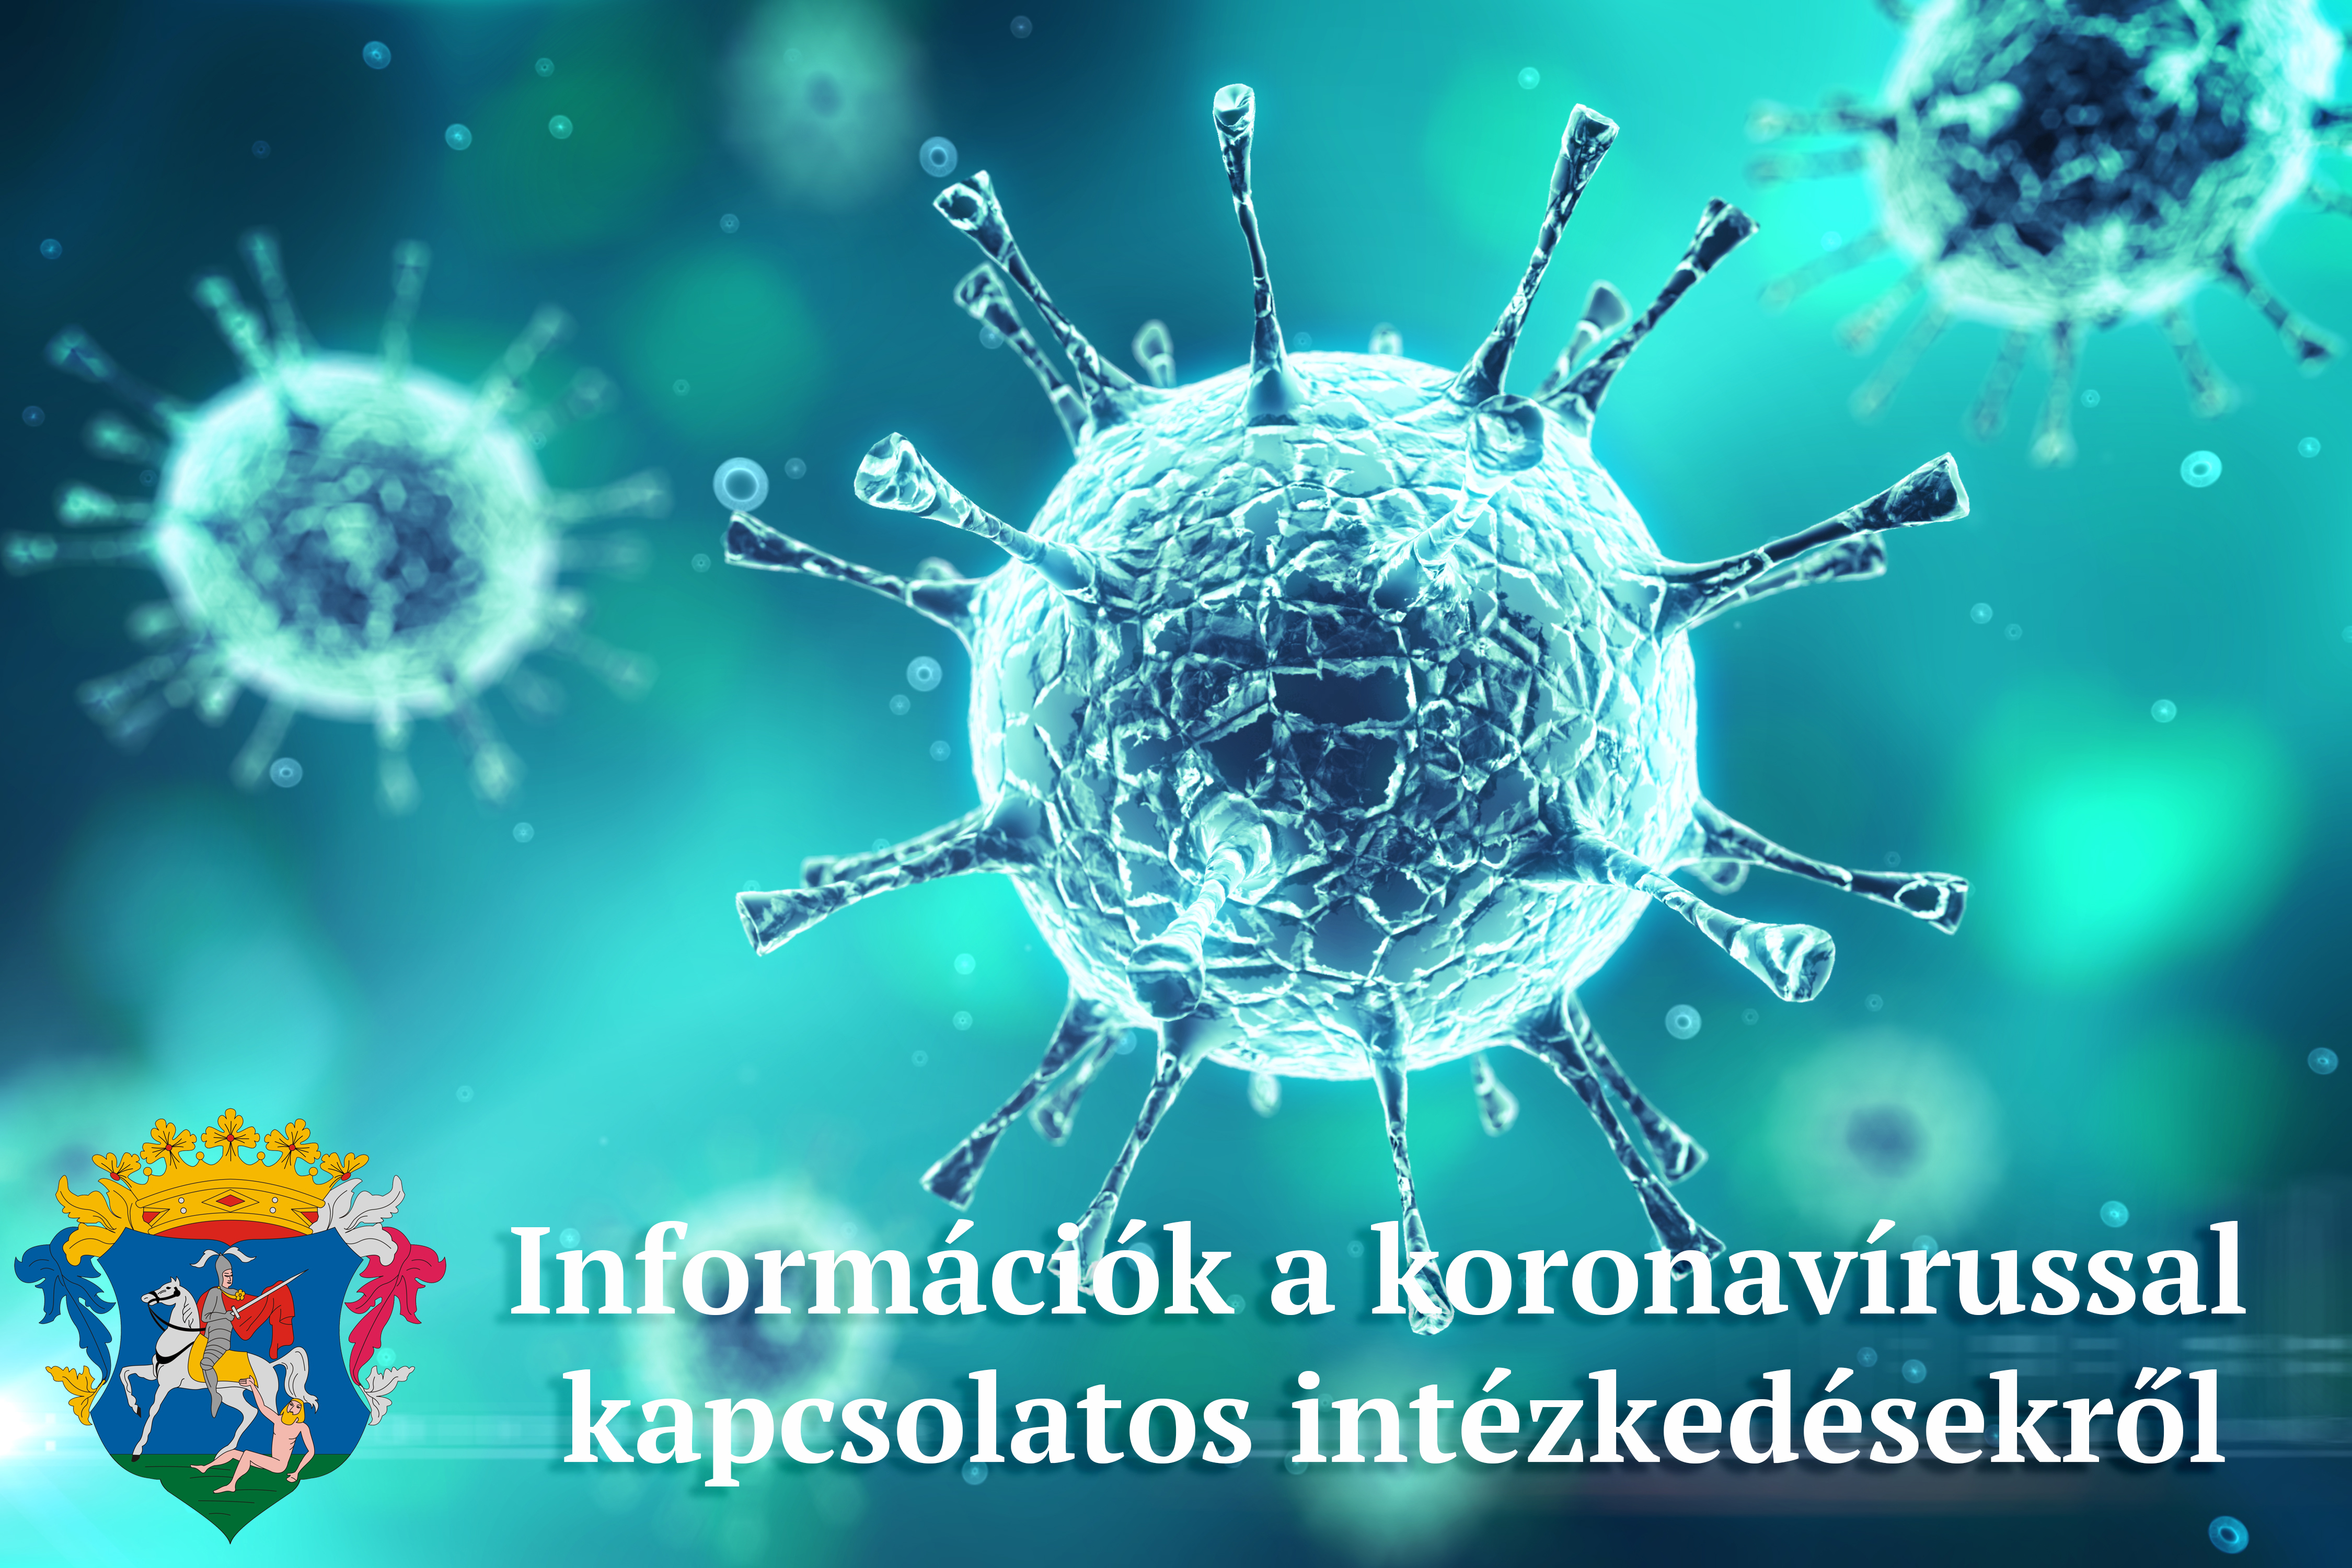 Koronavírussal kapcsolatos intézkedések, döntések 2021. április 23 - 29 között